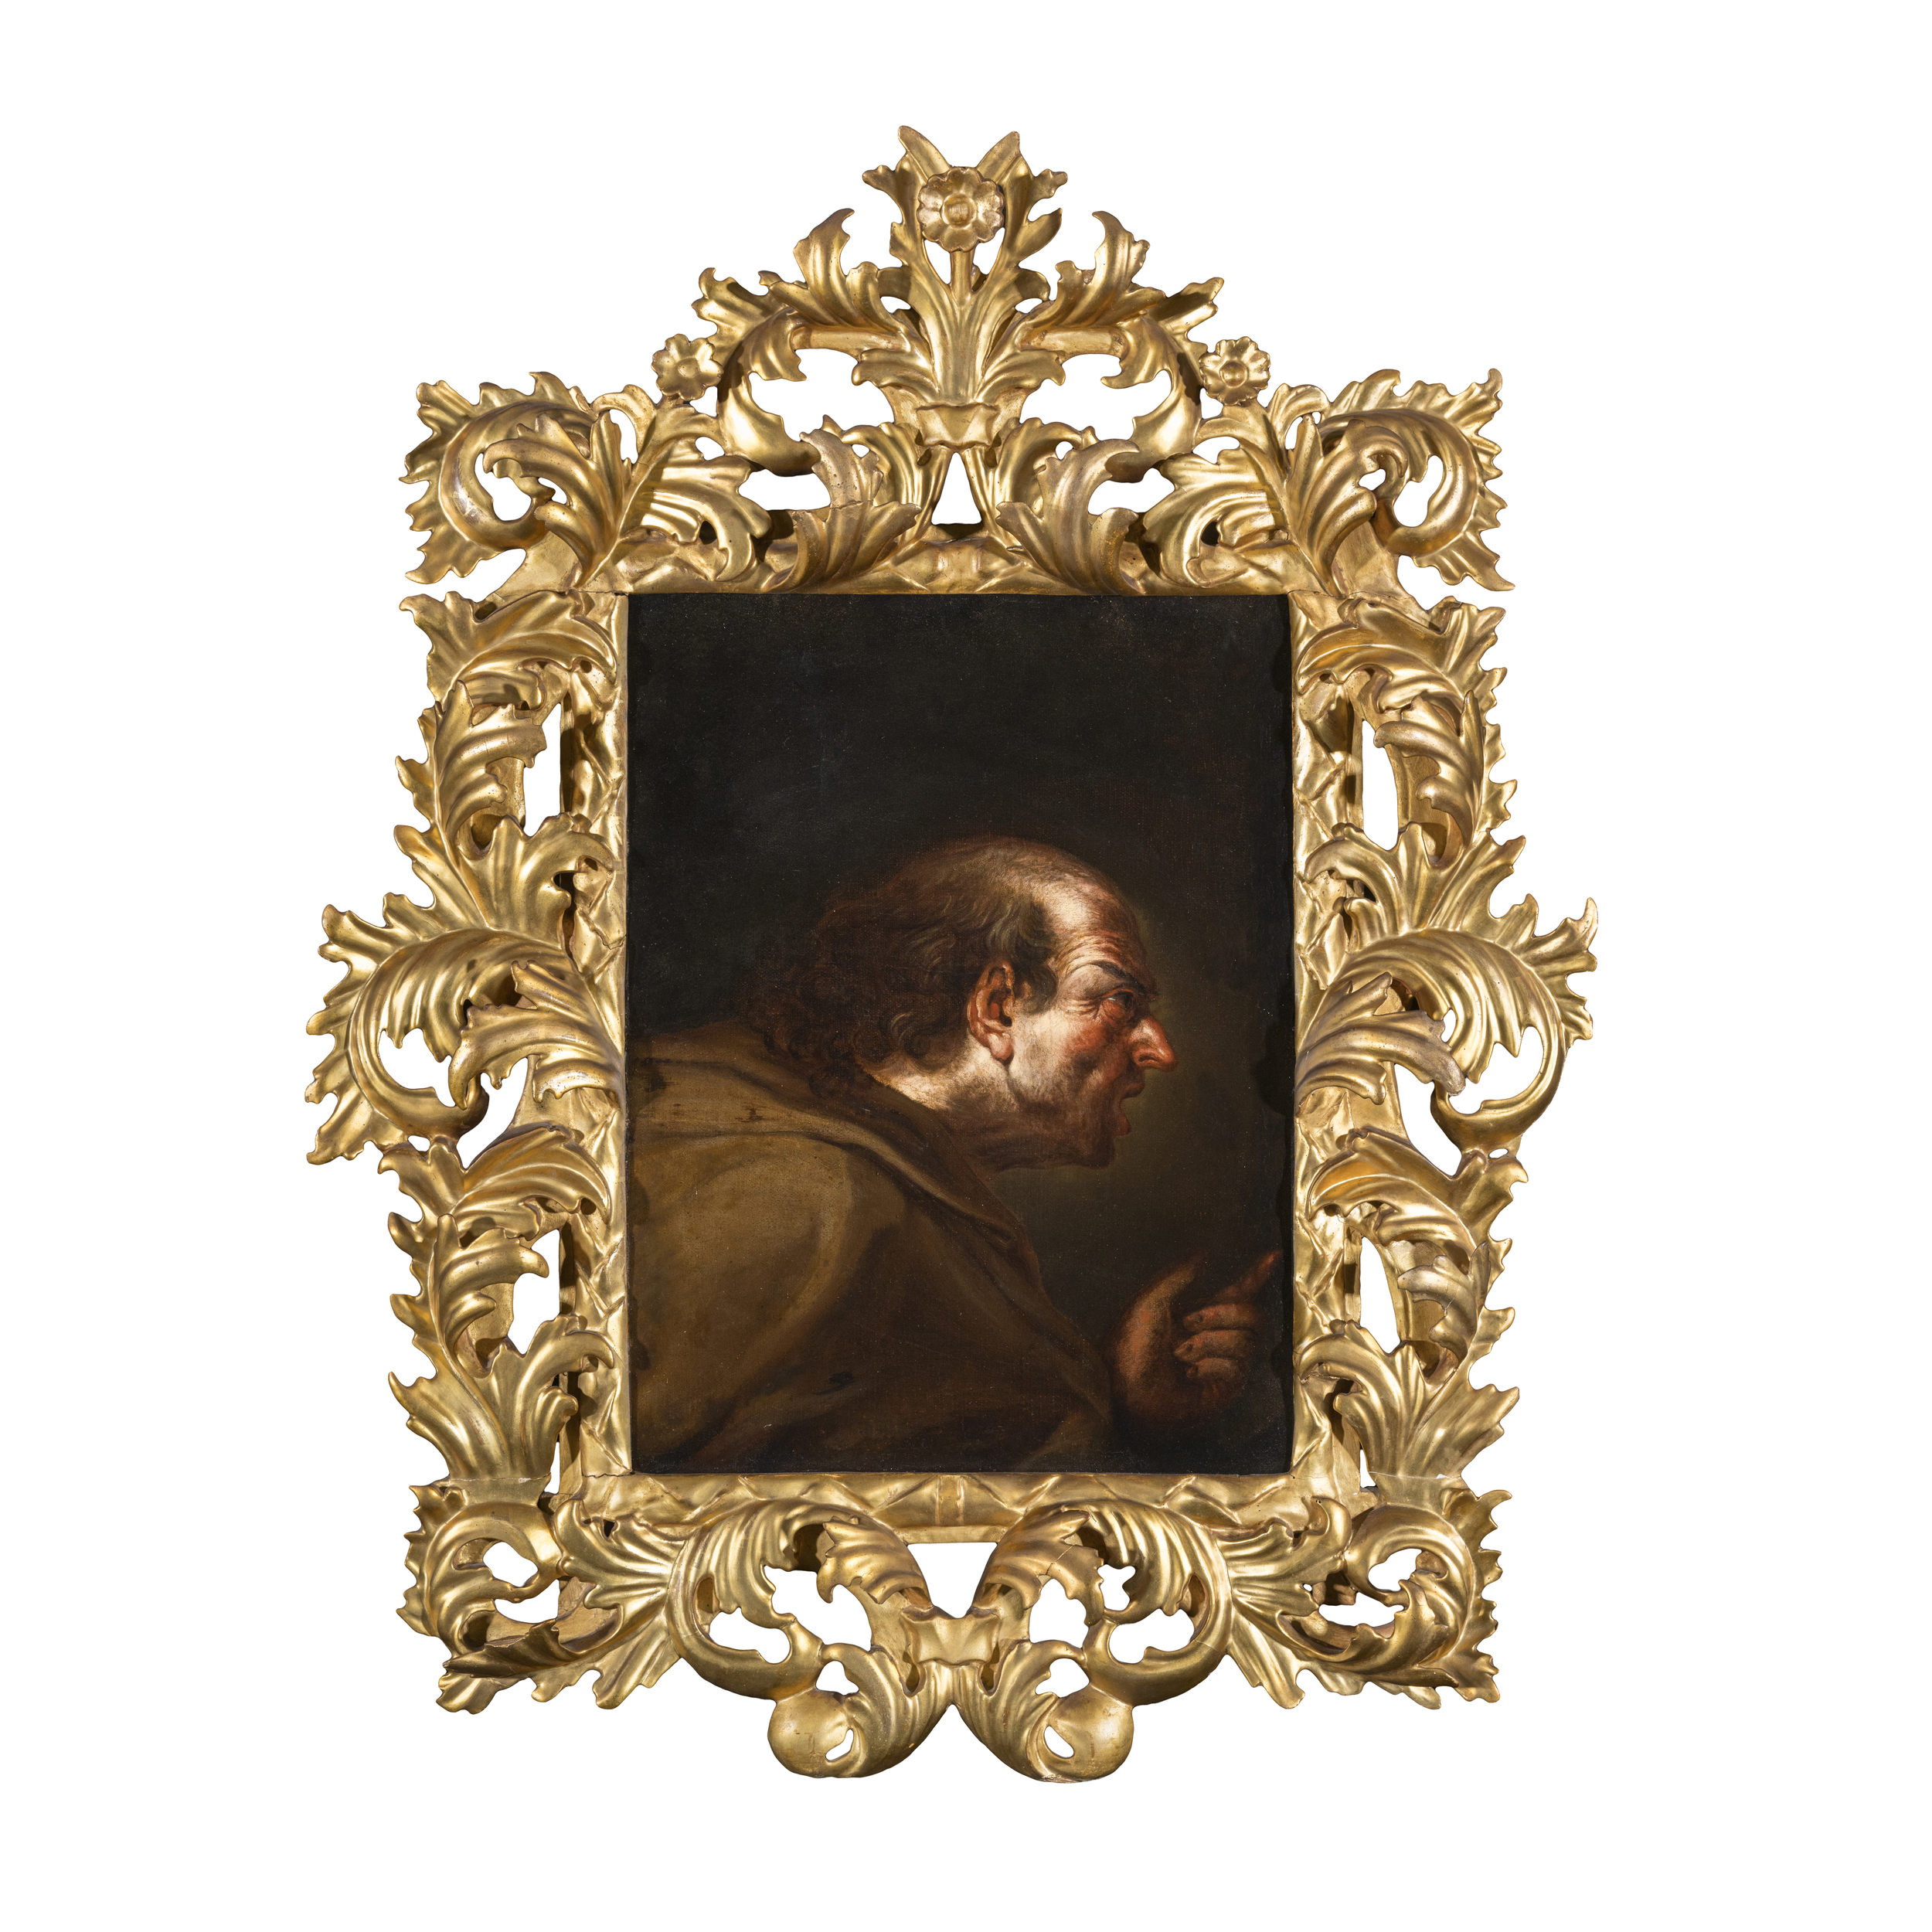 Giacinto Brandi (Poli 1621 - Roma 1691) attribuito